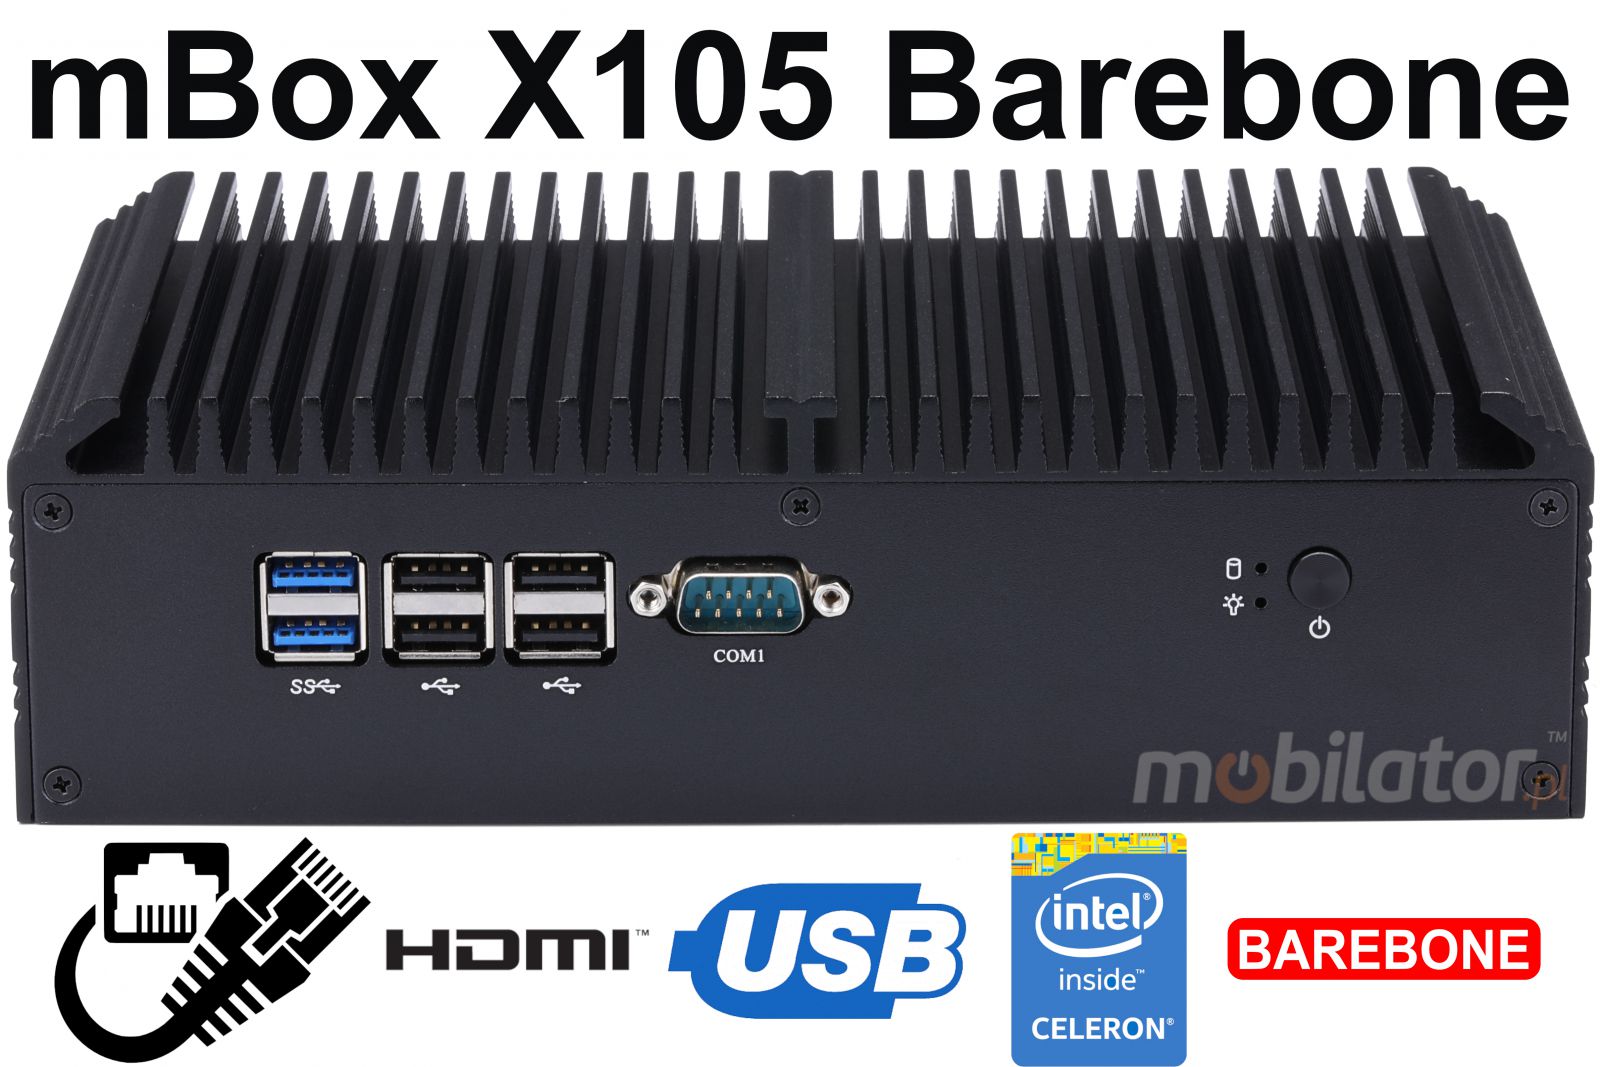 mBox X155 Barebone - Przemysowy MiniPC z procesorem Intel Celeron 3865U - Obrazek tytuowy